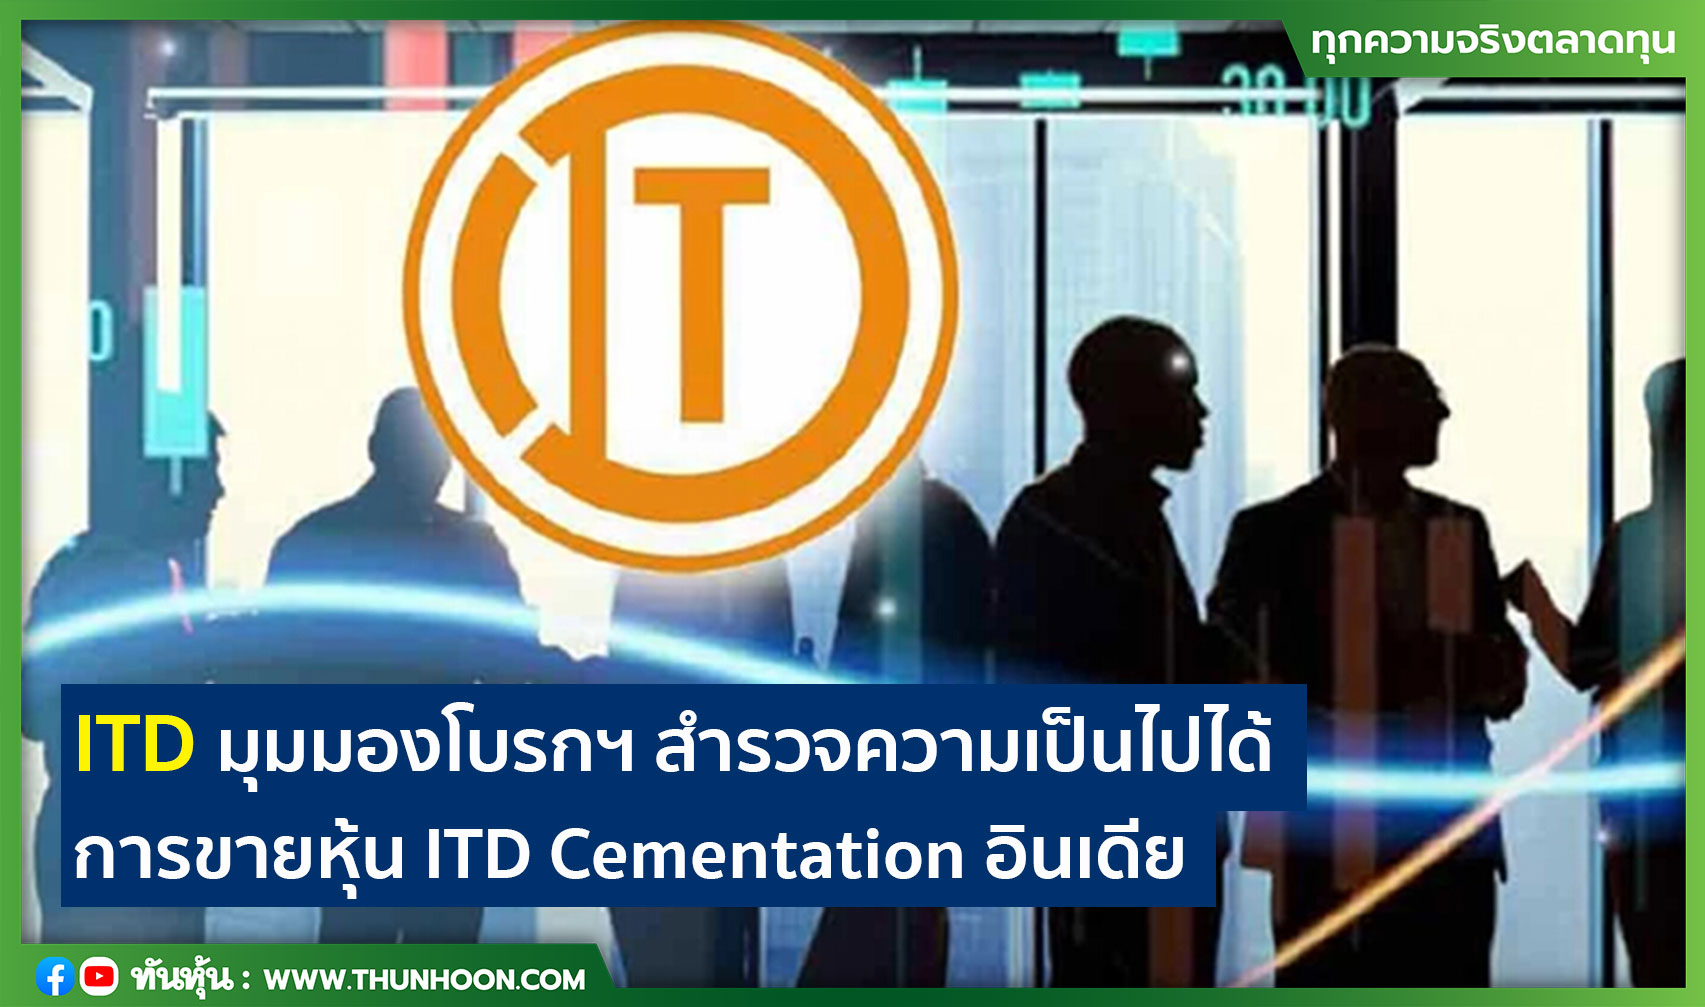 ITD มุมมองโบรกฯ สำรวจความเป็นไปได้ การขายหุ้น ITD Cementation อินเดีย